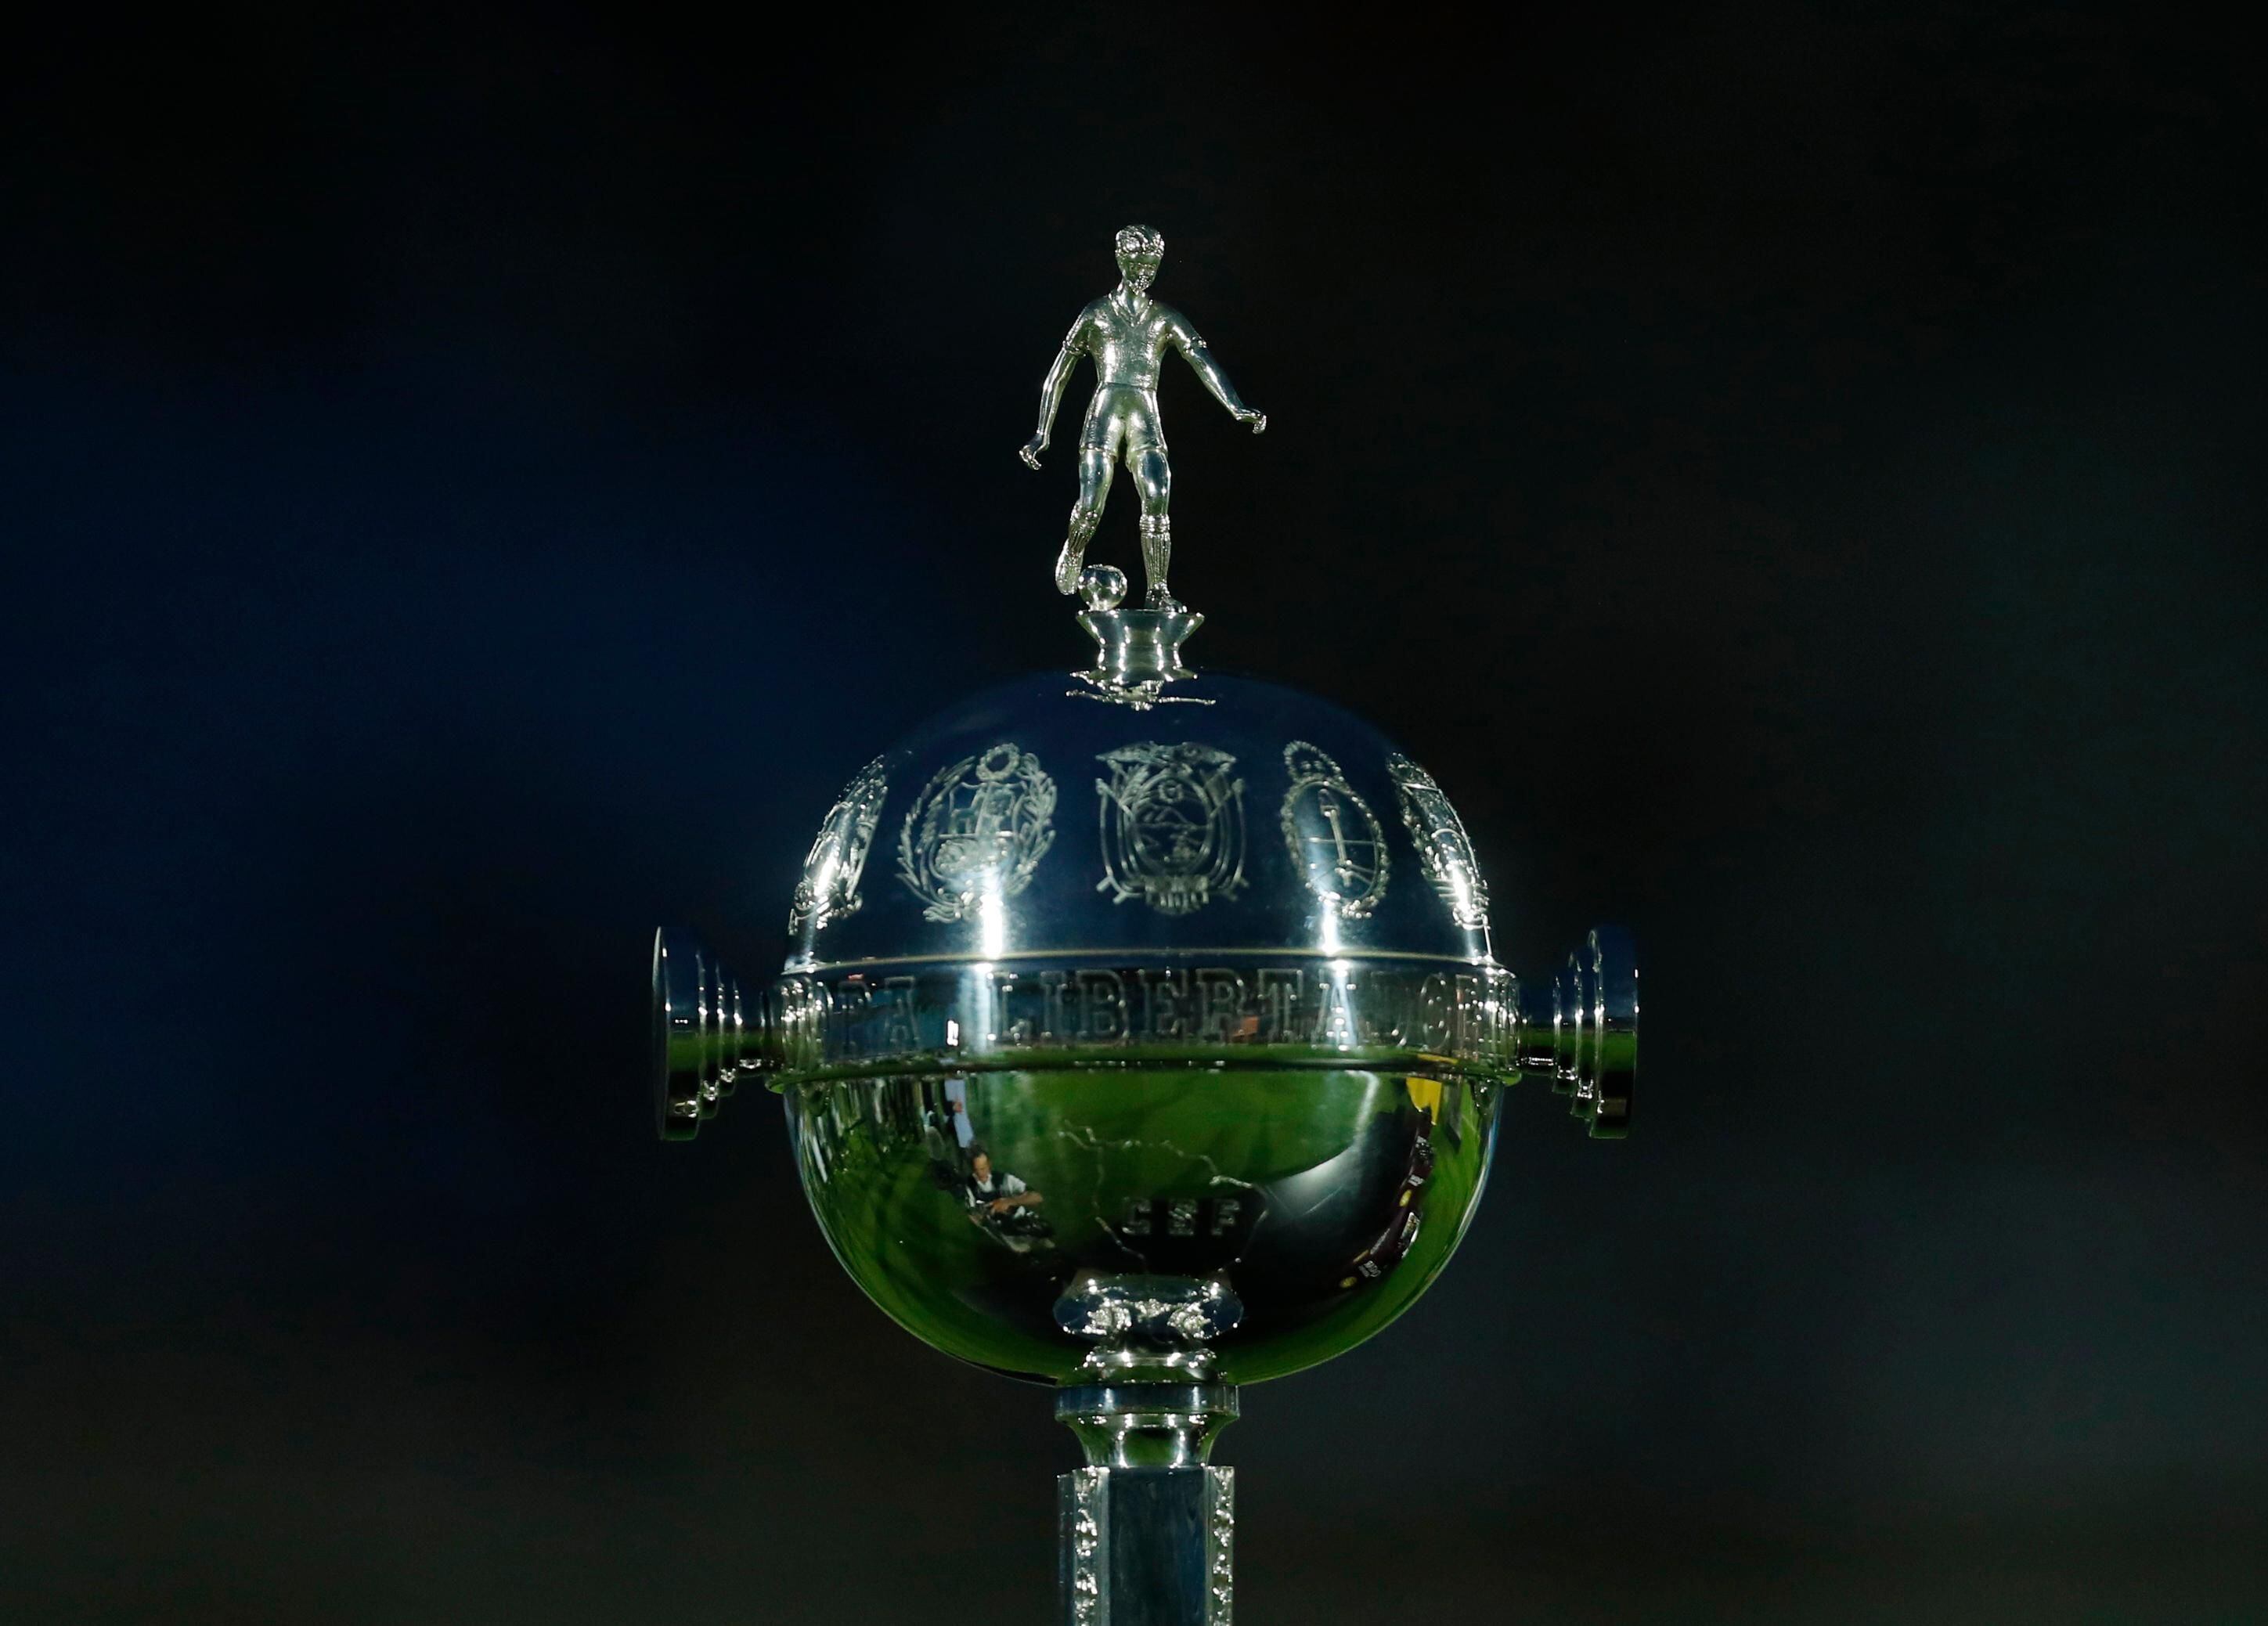 Libertadores 2023: saiba onde assistir aos jogos da semana na TV e pela  internet [18/04/23] 